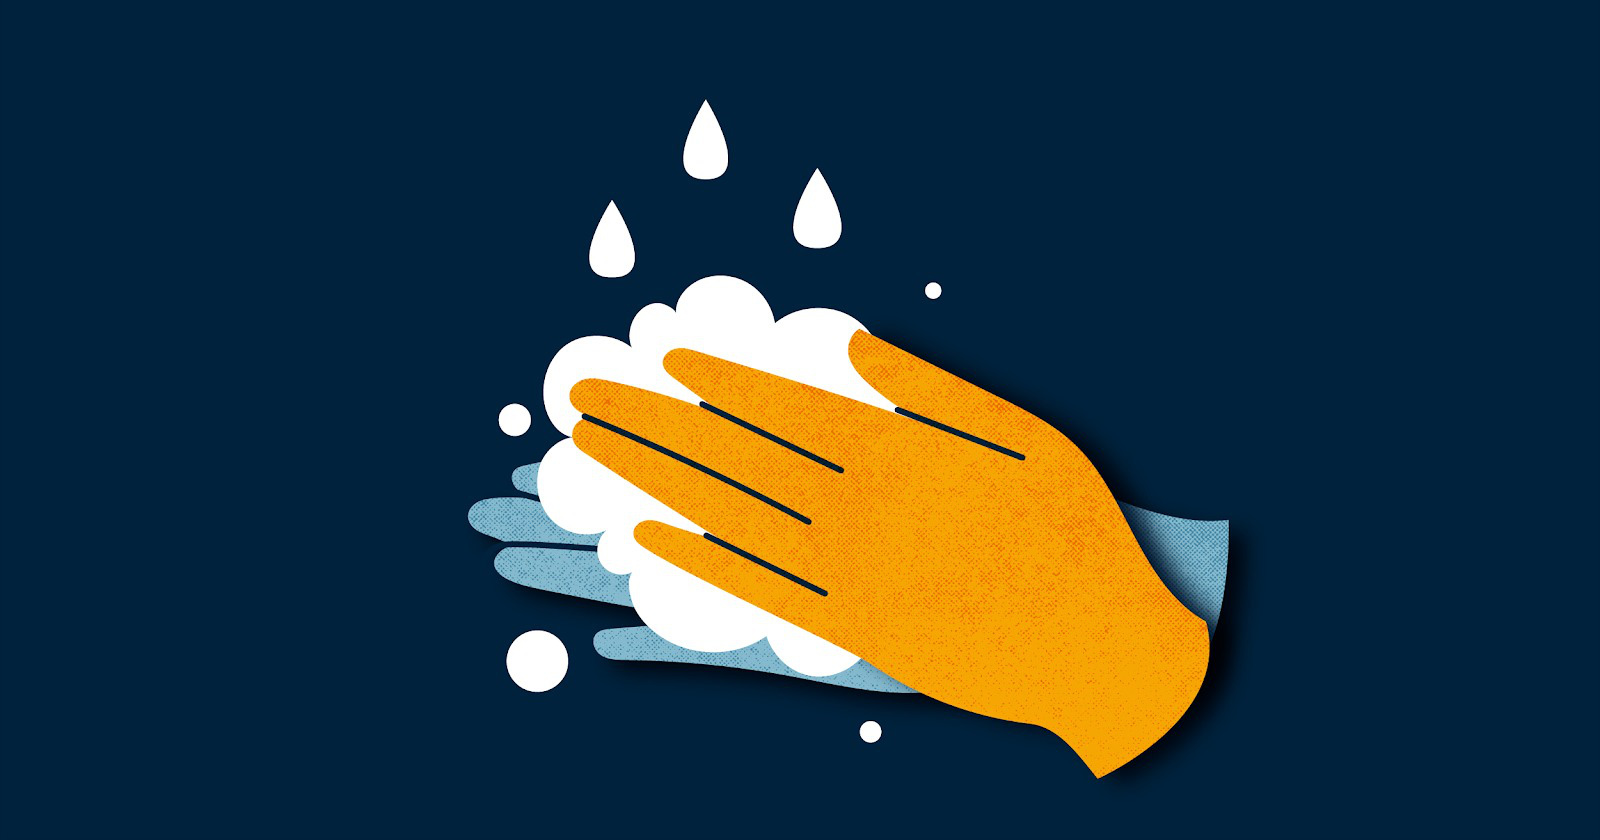 Găng tay y tế, găng tay dùng một lần thực sự là “lá chắn” giúp tránh được COVID-19? - Ảnh 4.